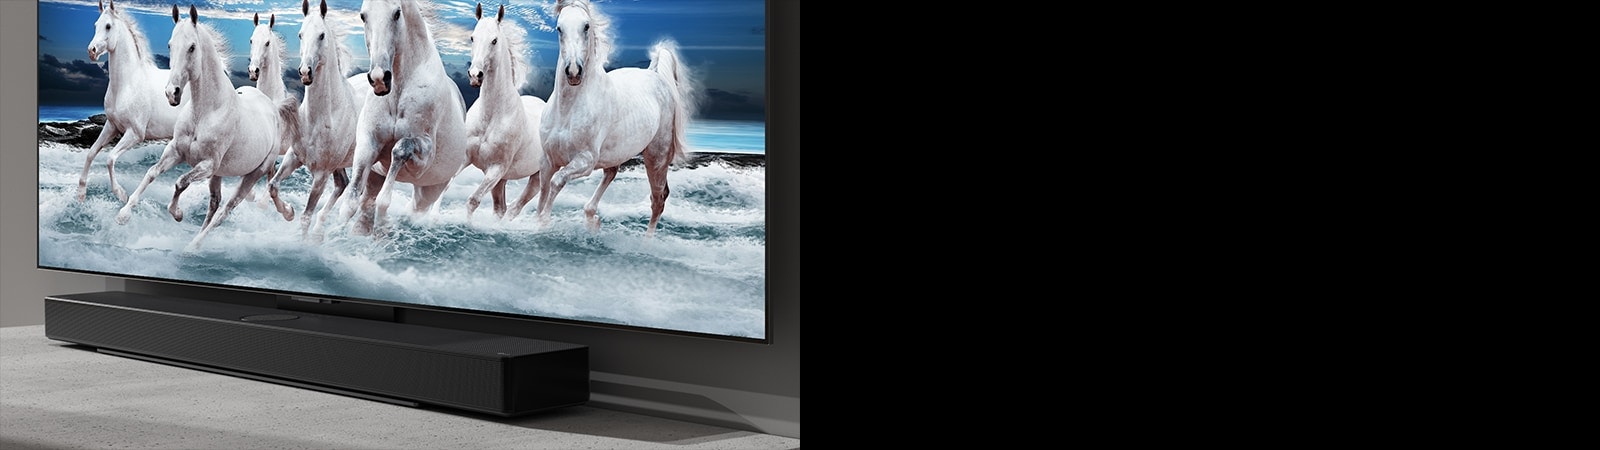 مكبر الصوت والتلفاز على طاولة بيضاء وتظهر 7 خيول بيضاء على التلفاز.